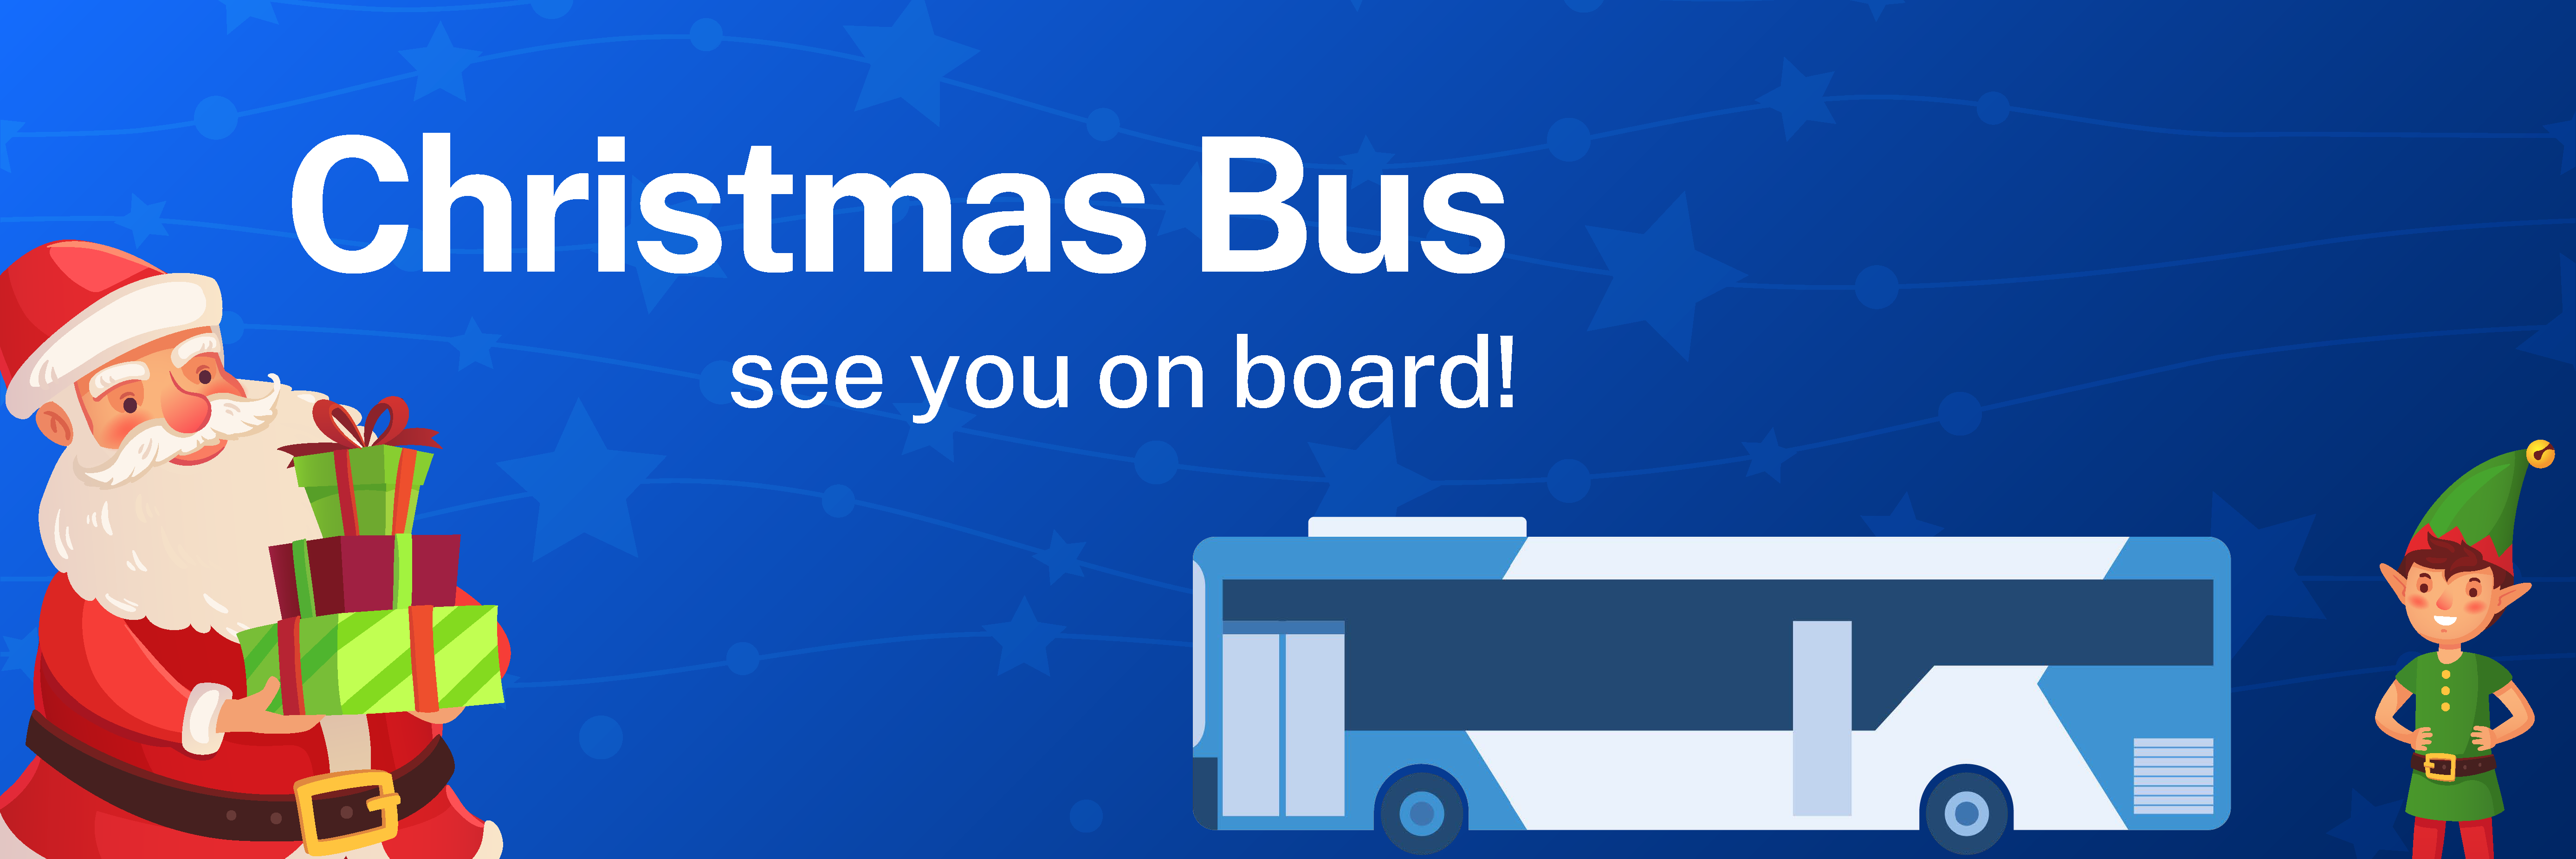 Christmas Bus banner